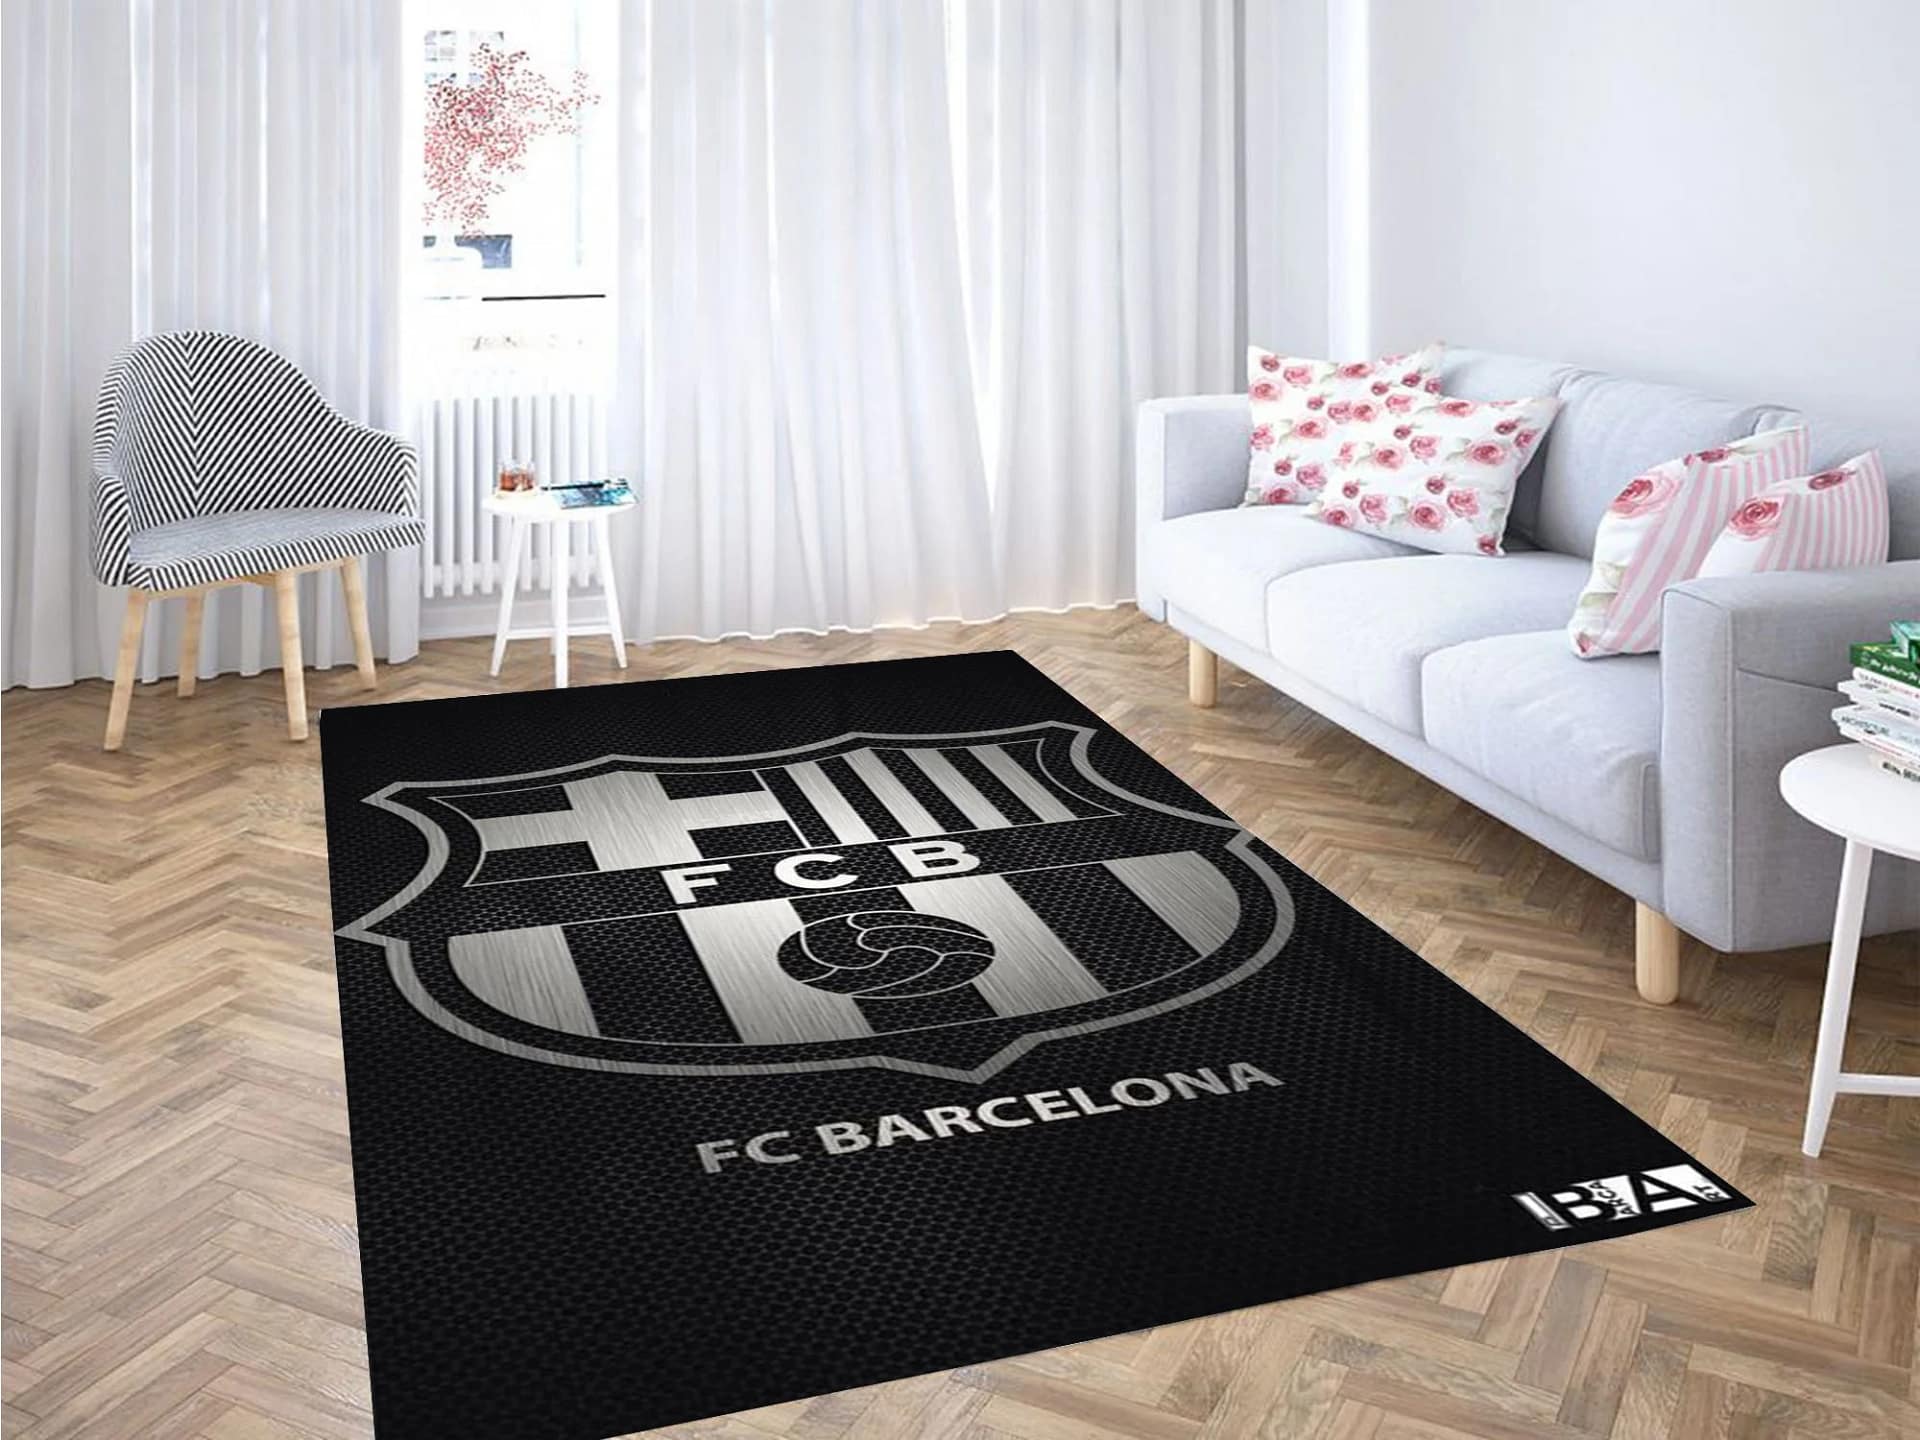 Barcelona Fondos Carpet Rug